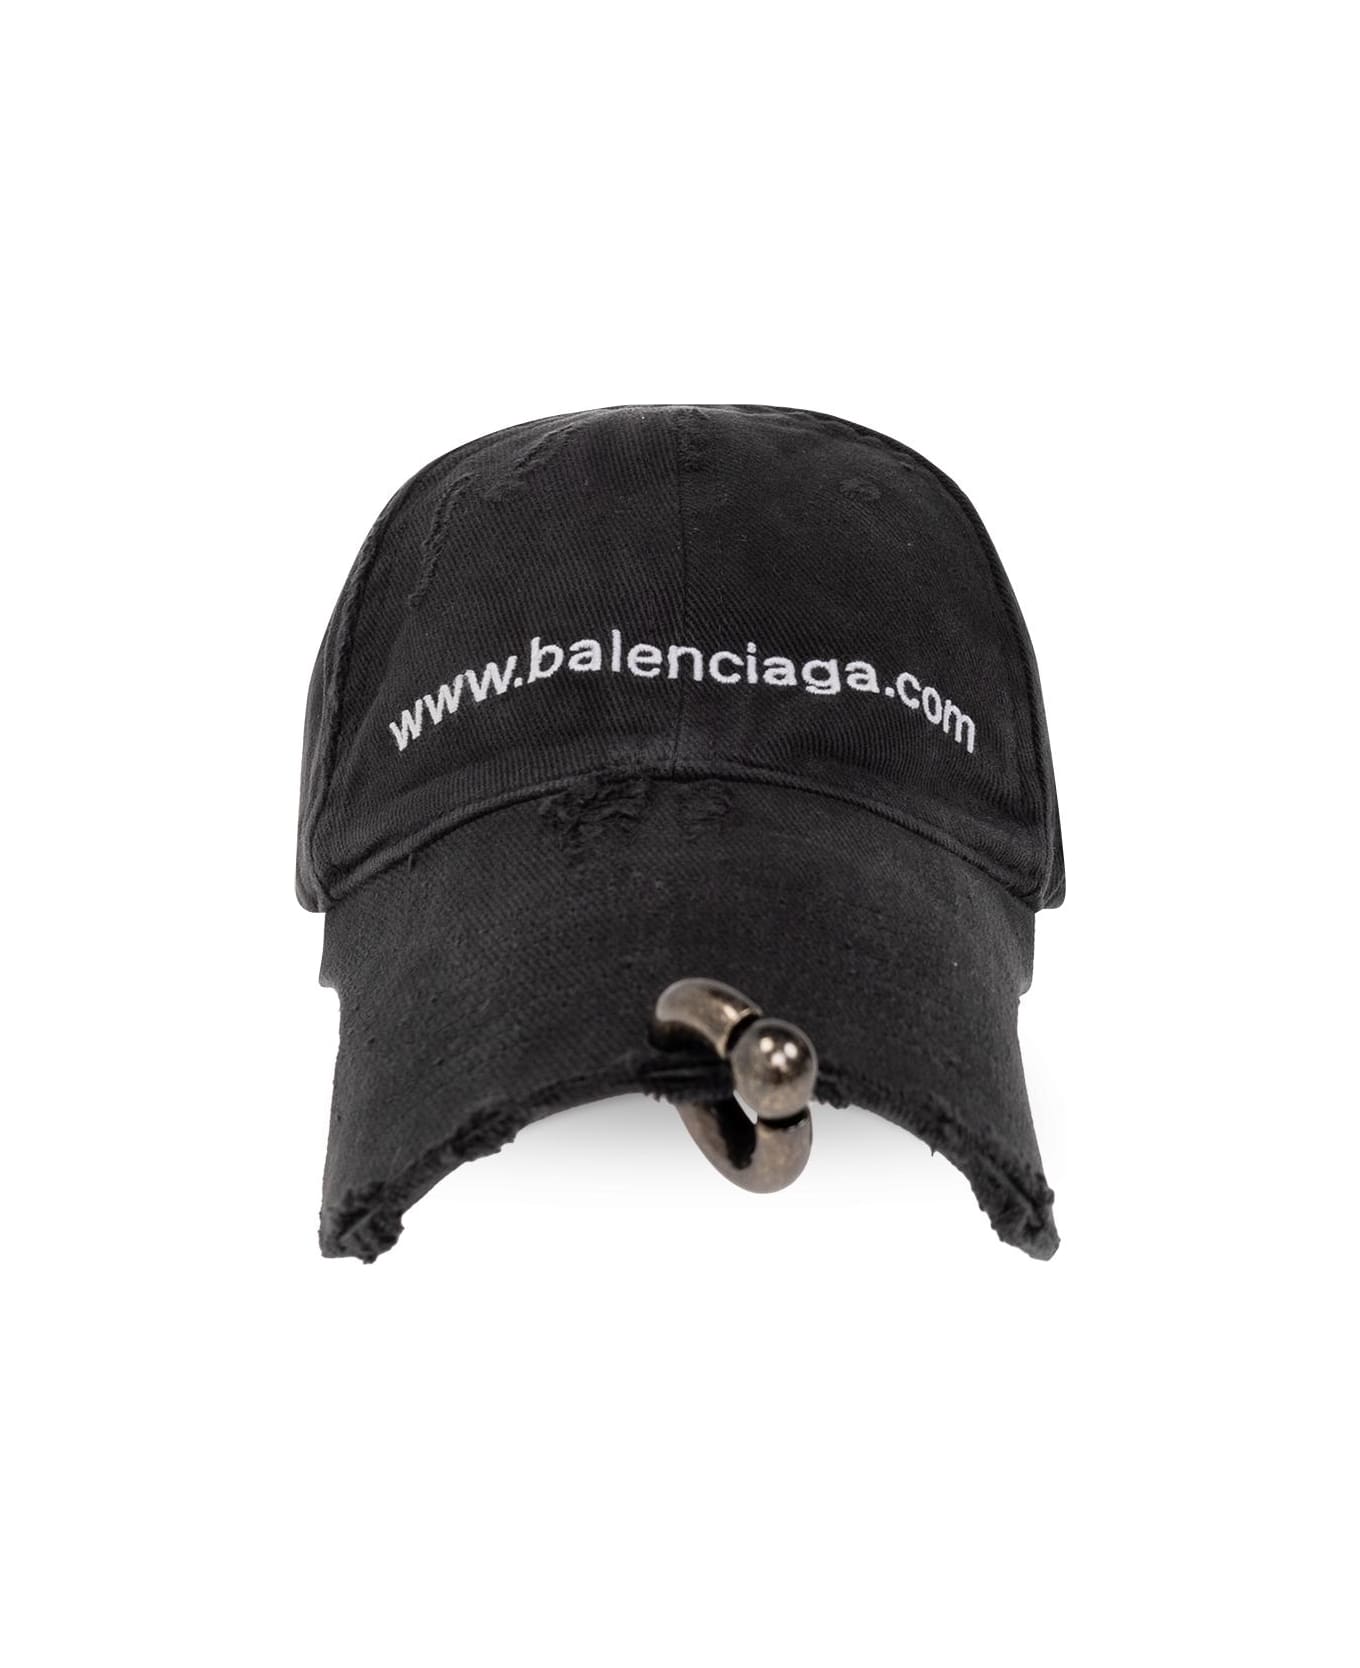 Balenciaga Front Piercing Cap - NERO